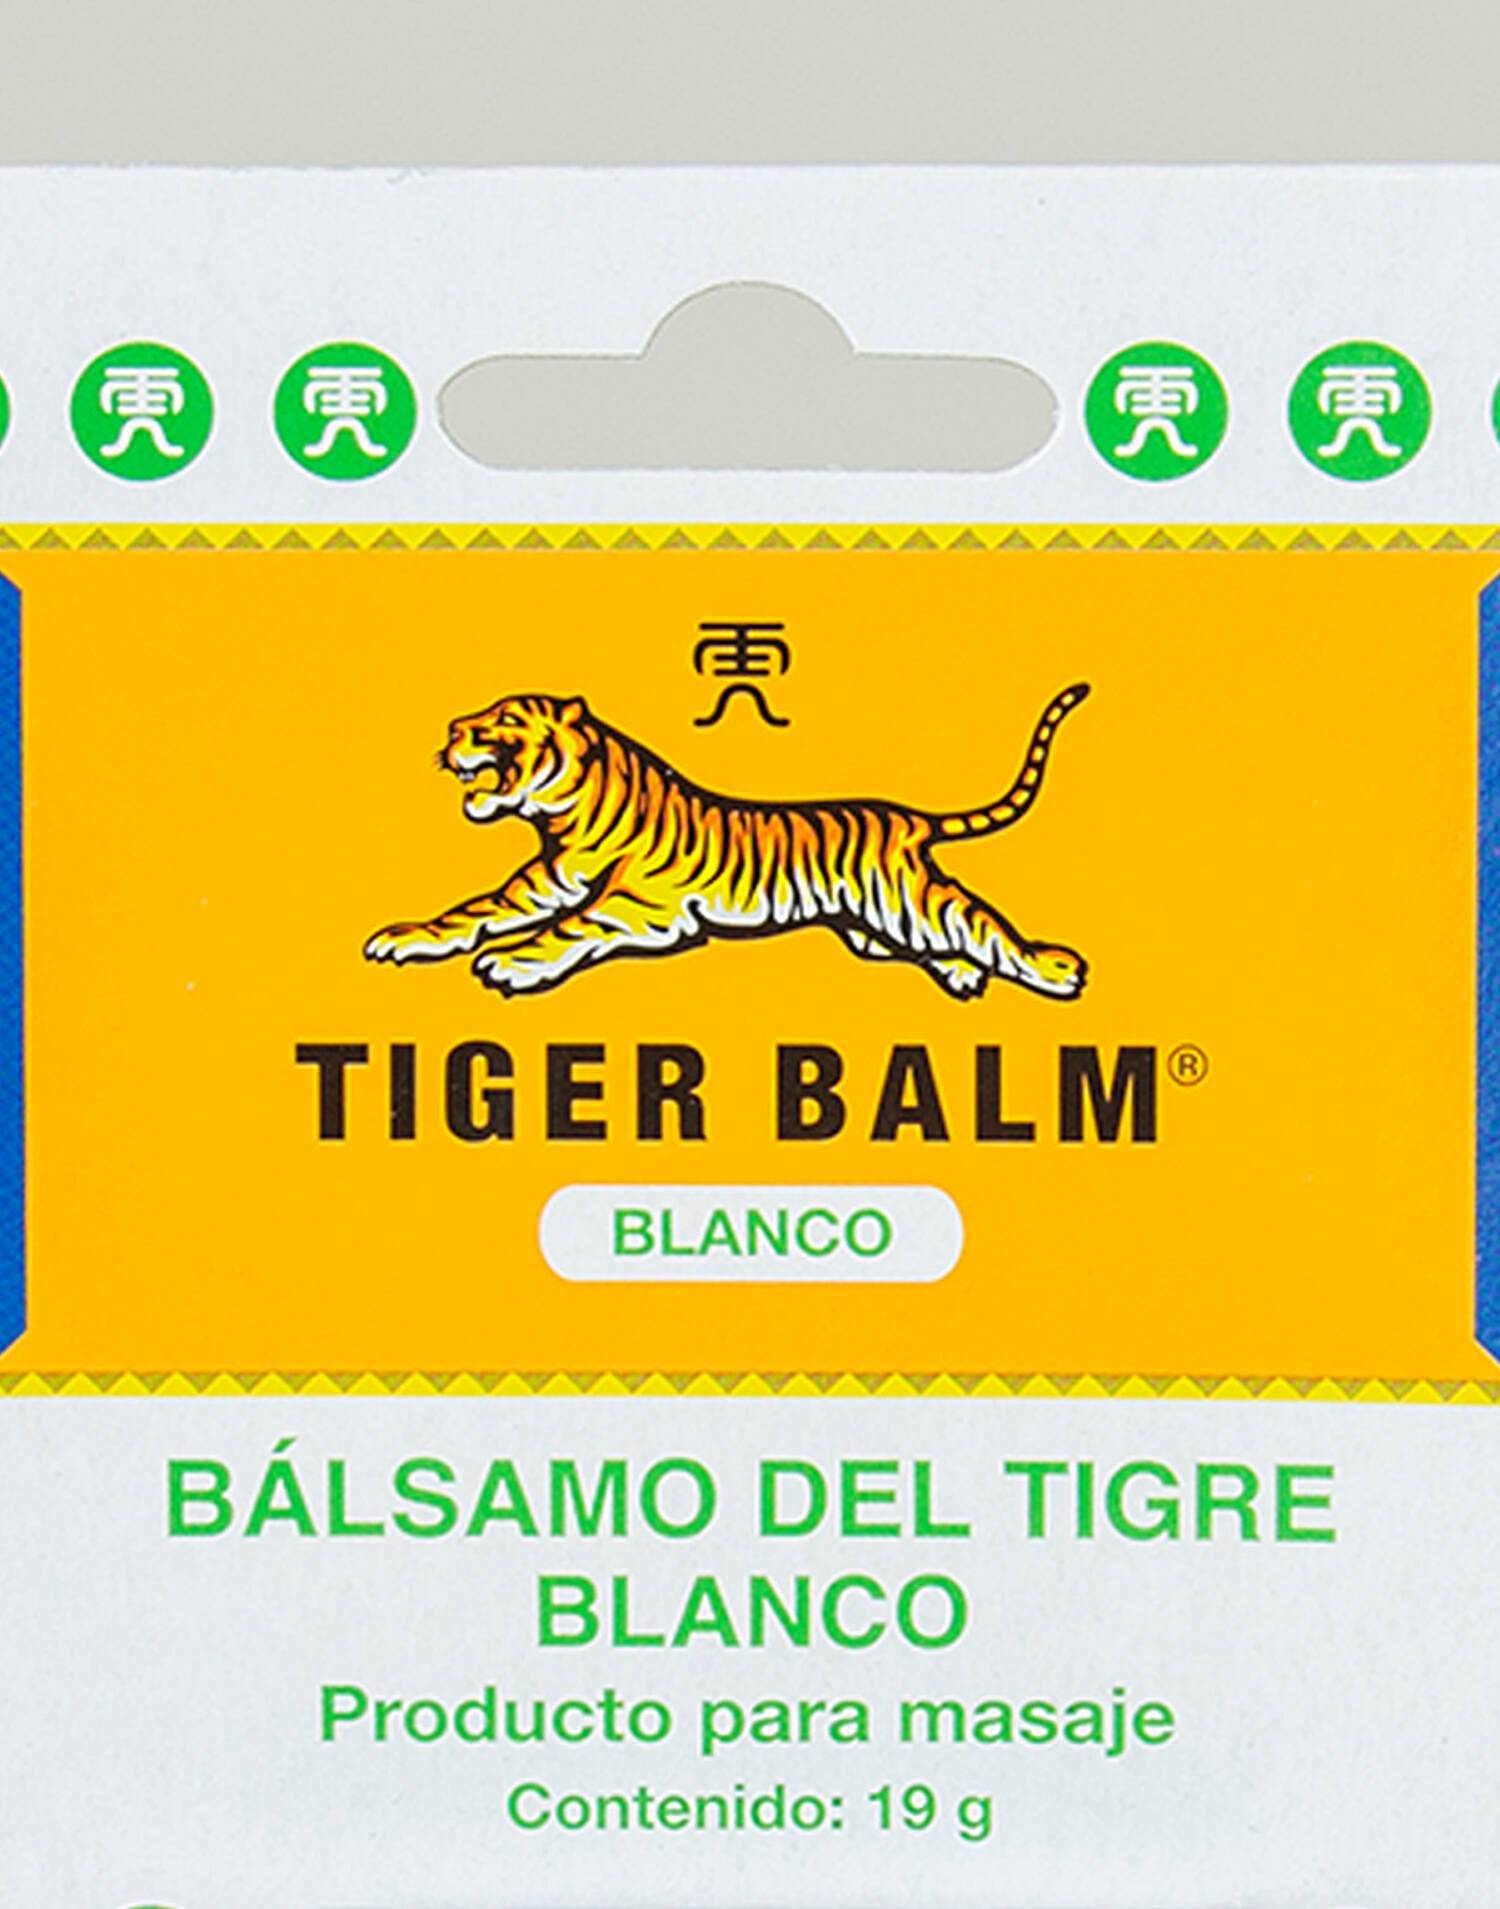 Balsamo Tigre Blanco 19g - Comprar ahora.